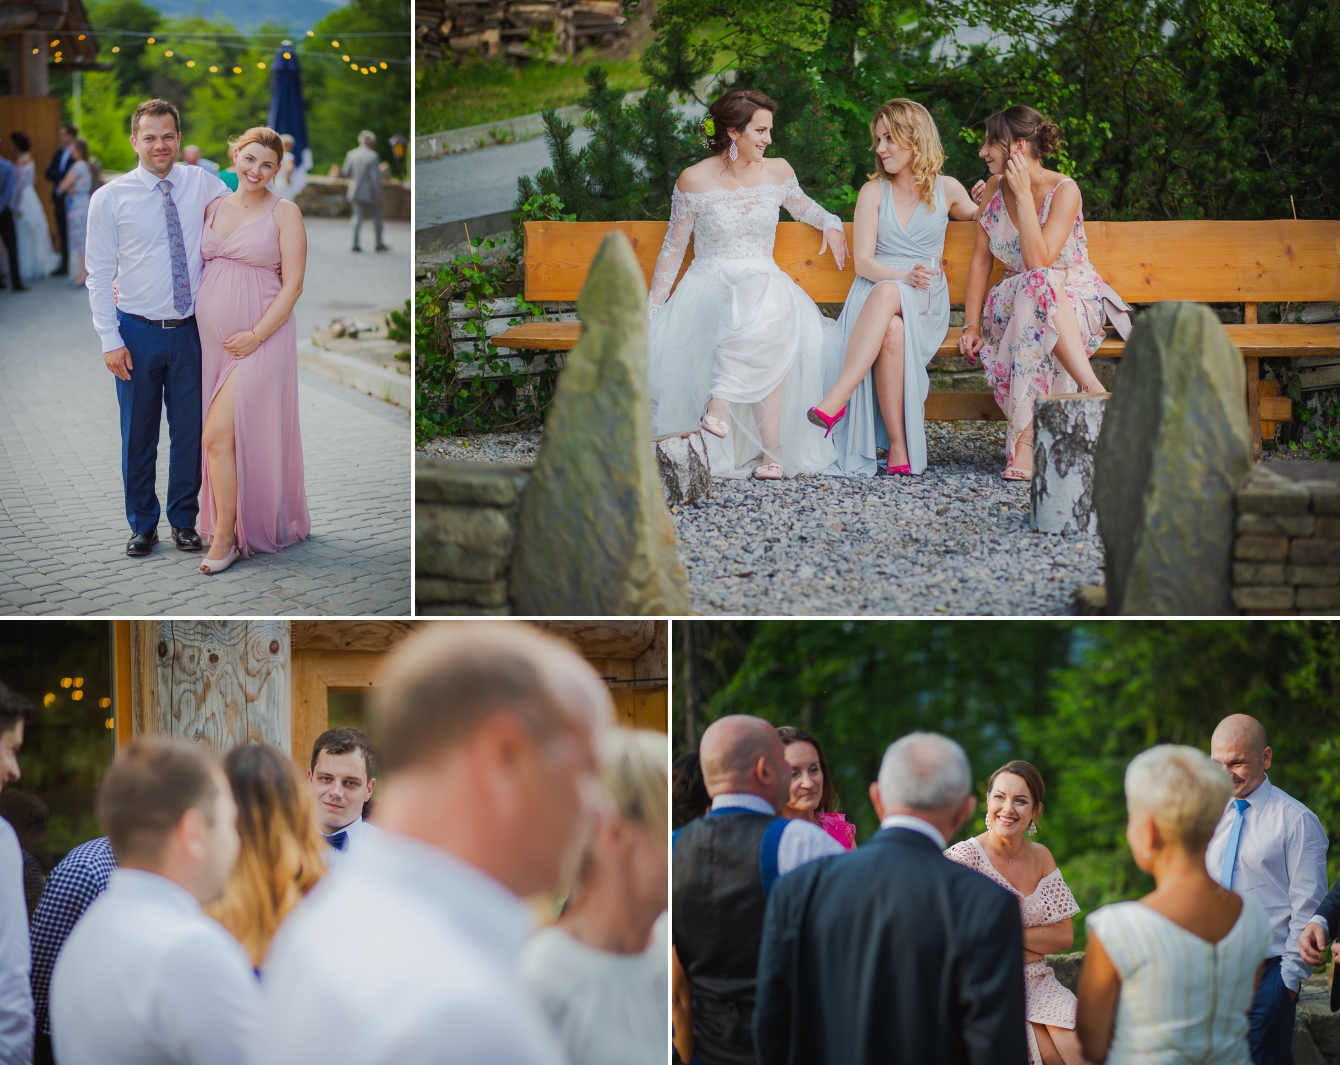 Ania i Damian - ślub w górach - Kocierz SPA - fotografia ślubna - bartek Wyrobek  (20).jpg